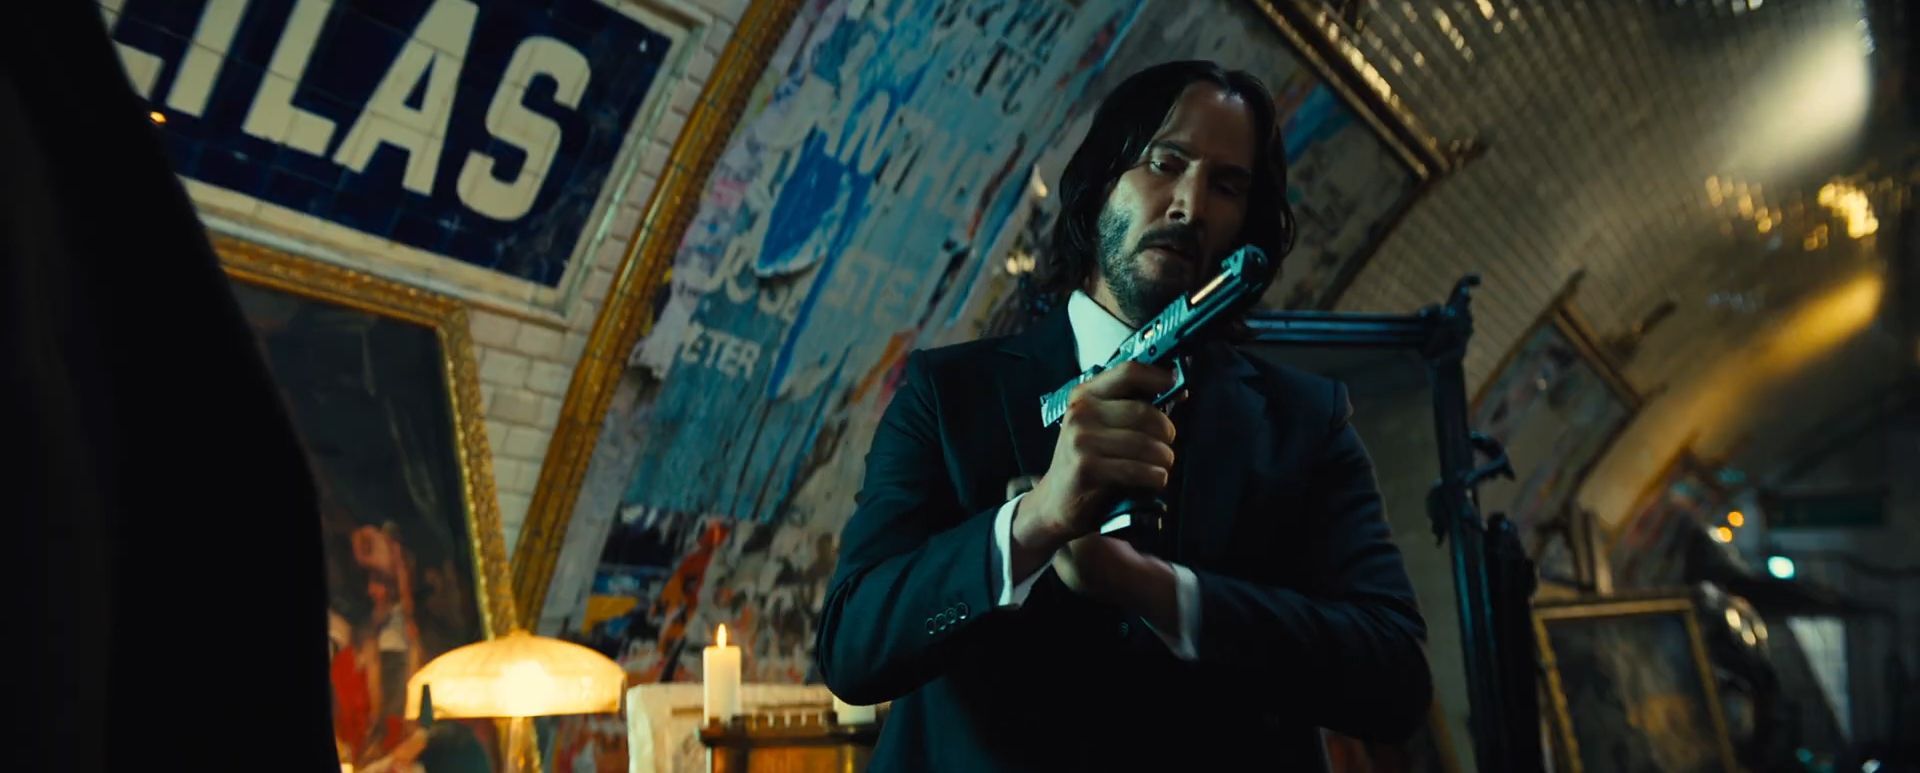 Lionsgate ha confirmado John Wick 5, película que planea filmar junto con  John Wick 4 a inicios del próximo año. ¿Te gusta la saga…